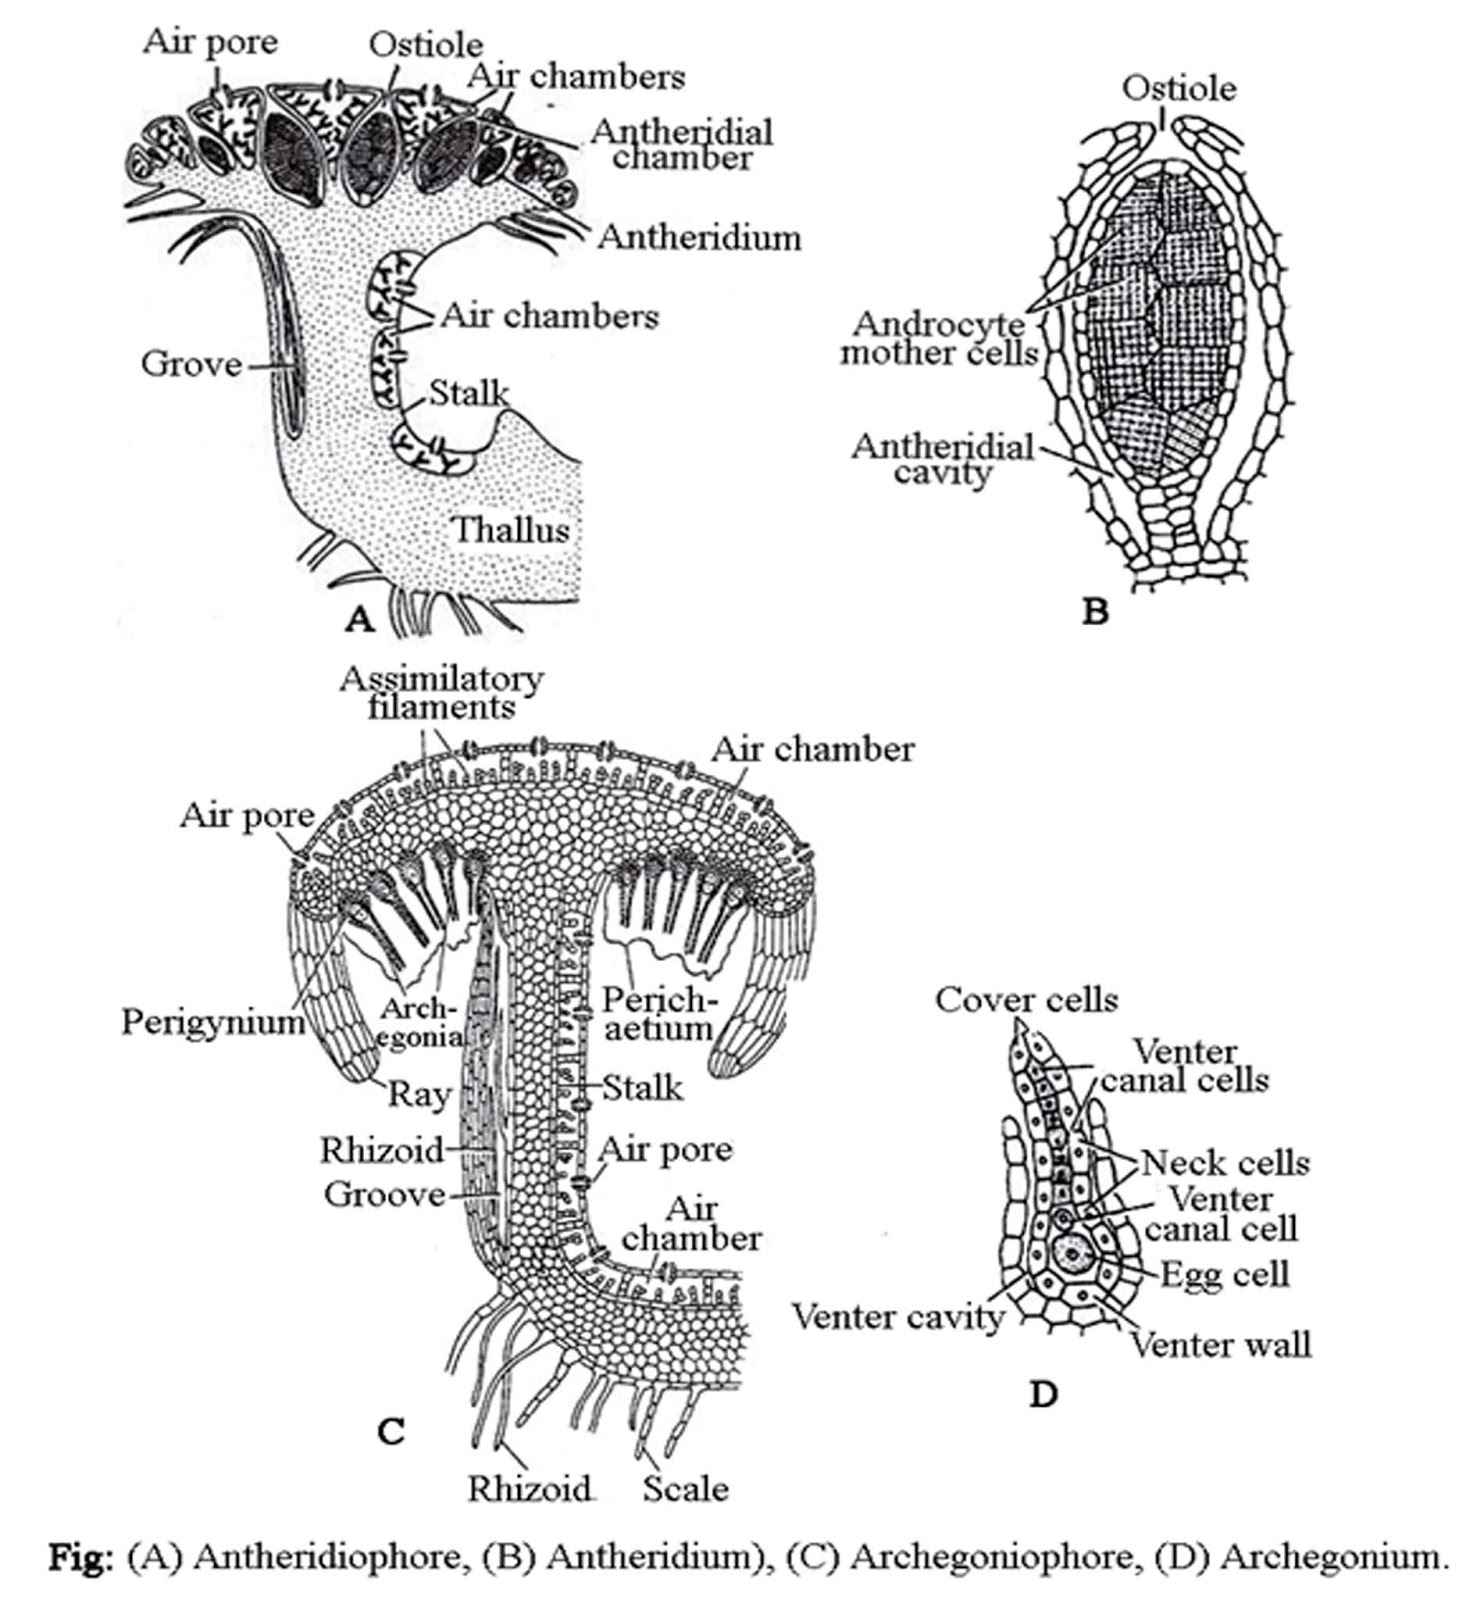 Marchantia sp labelled diagram